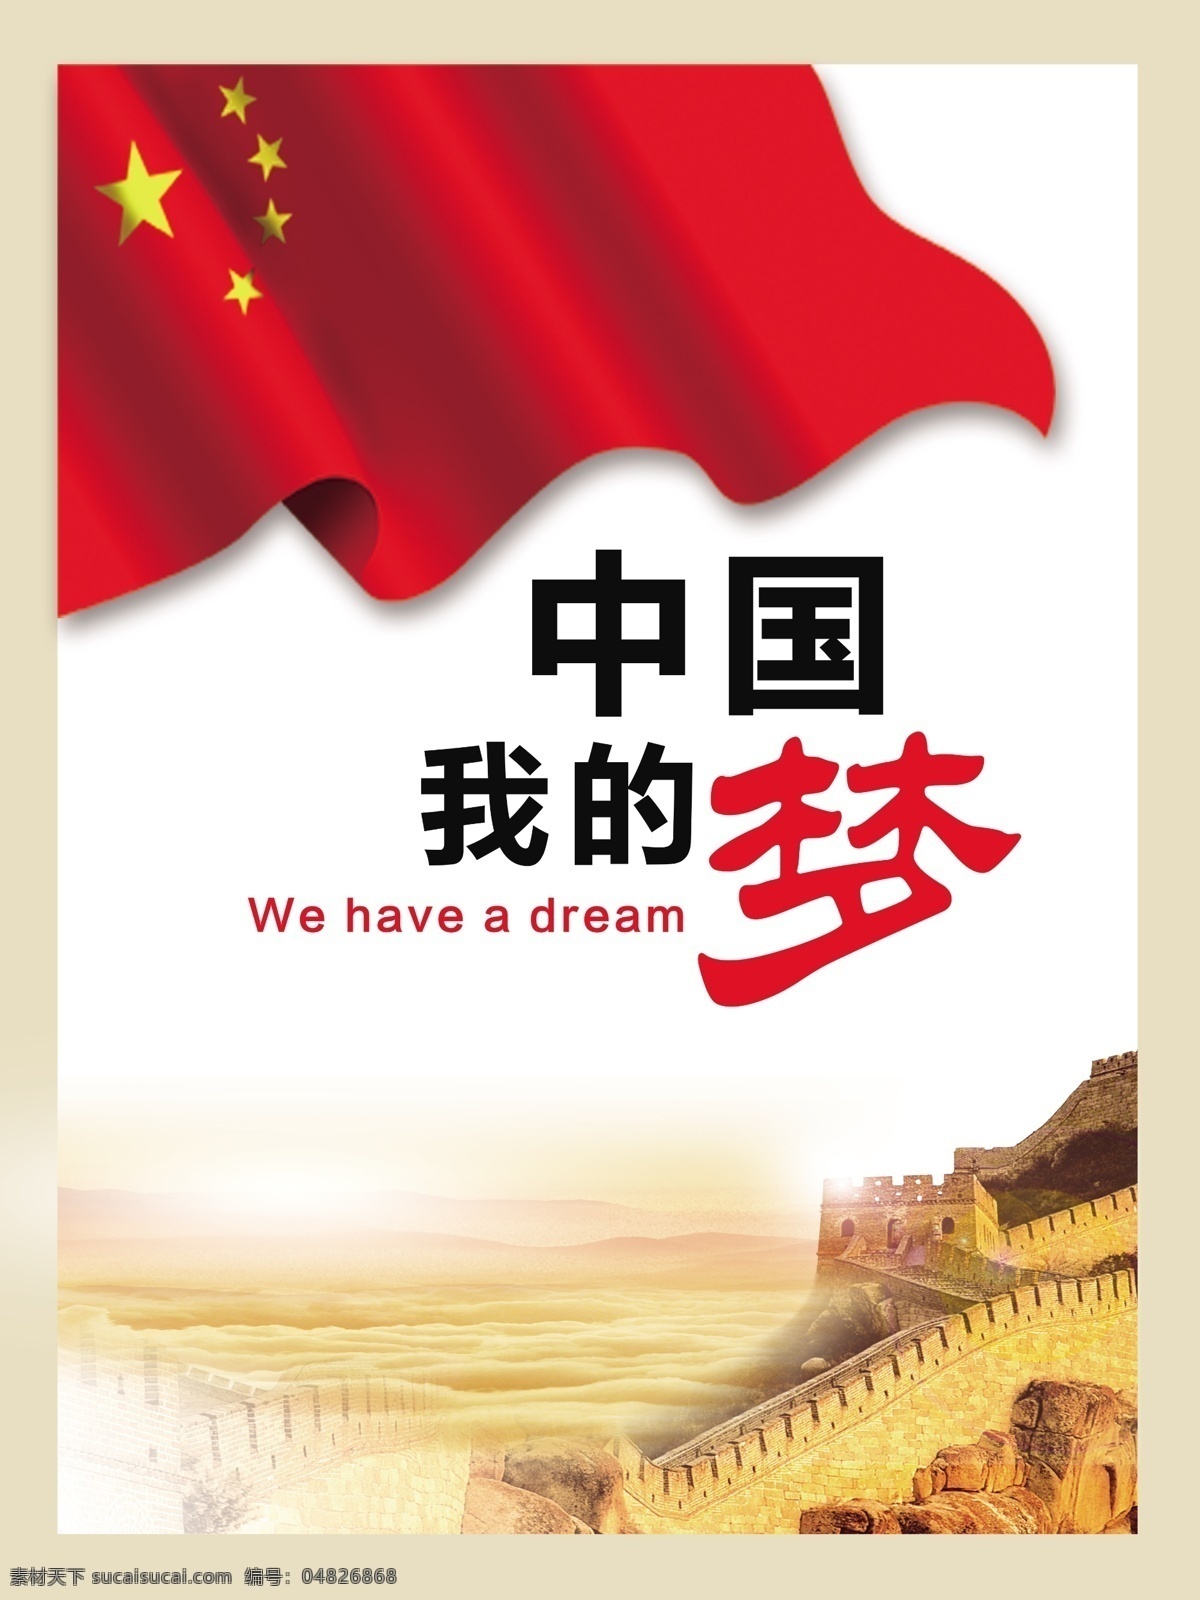 中国梦 中国我的梦 五星红旗 国旗 长城背景 单色背景 淡色背景图 中国 我的梦